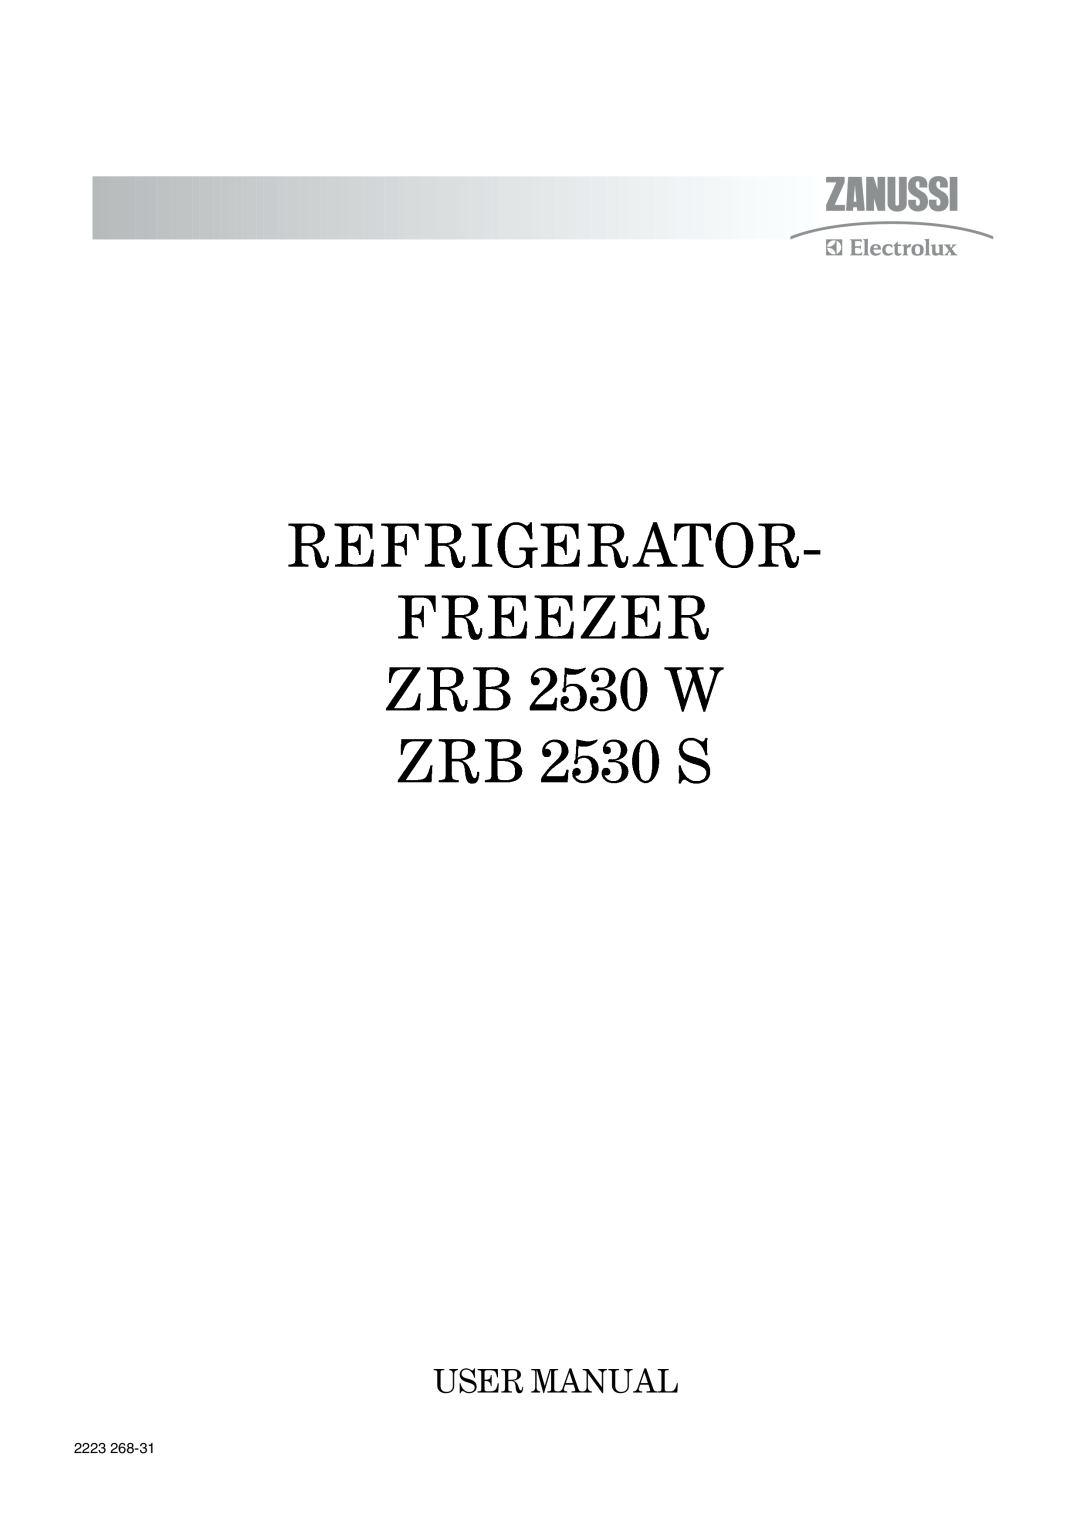 Zanussi user manual REFRIGERATOR FREEZER ZRB 2530 W ZRB 2530 S, 2223 